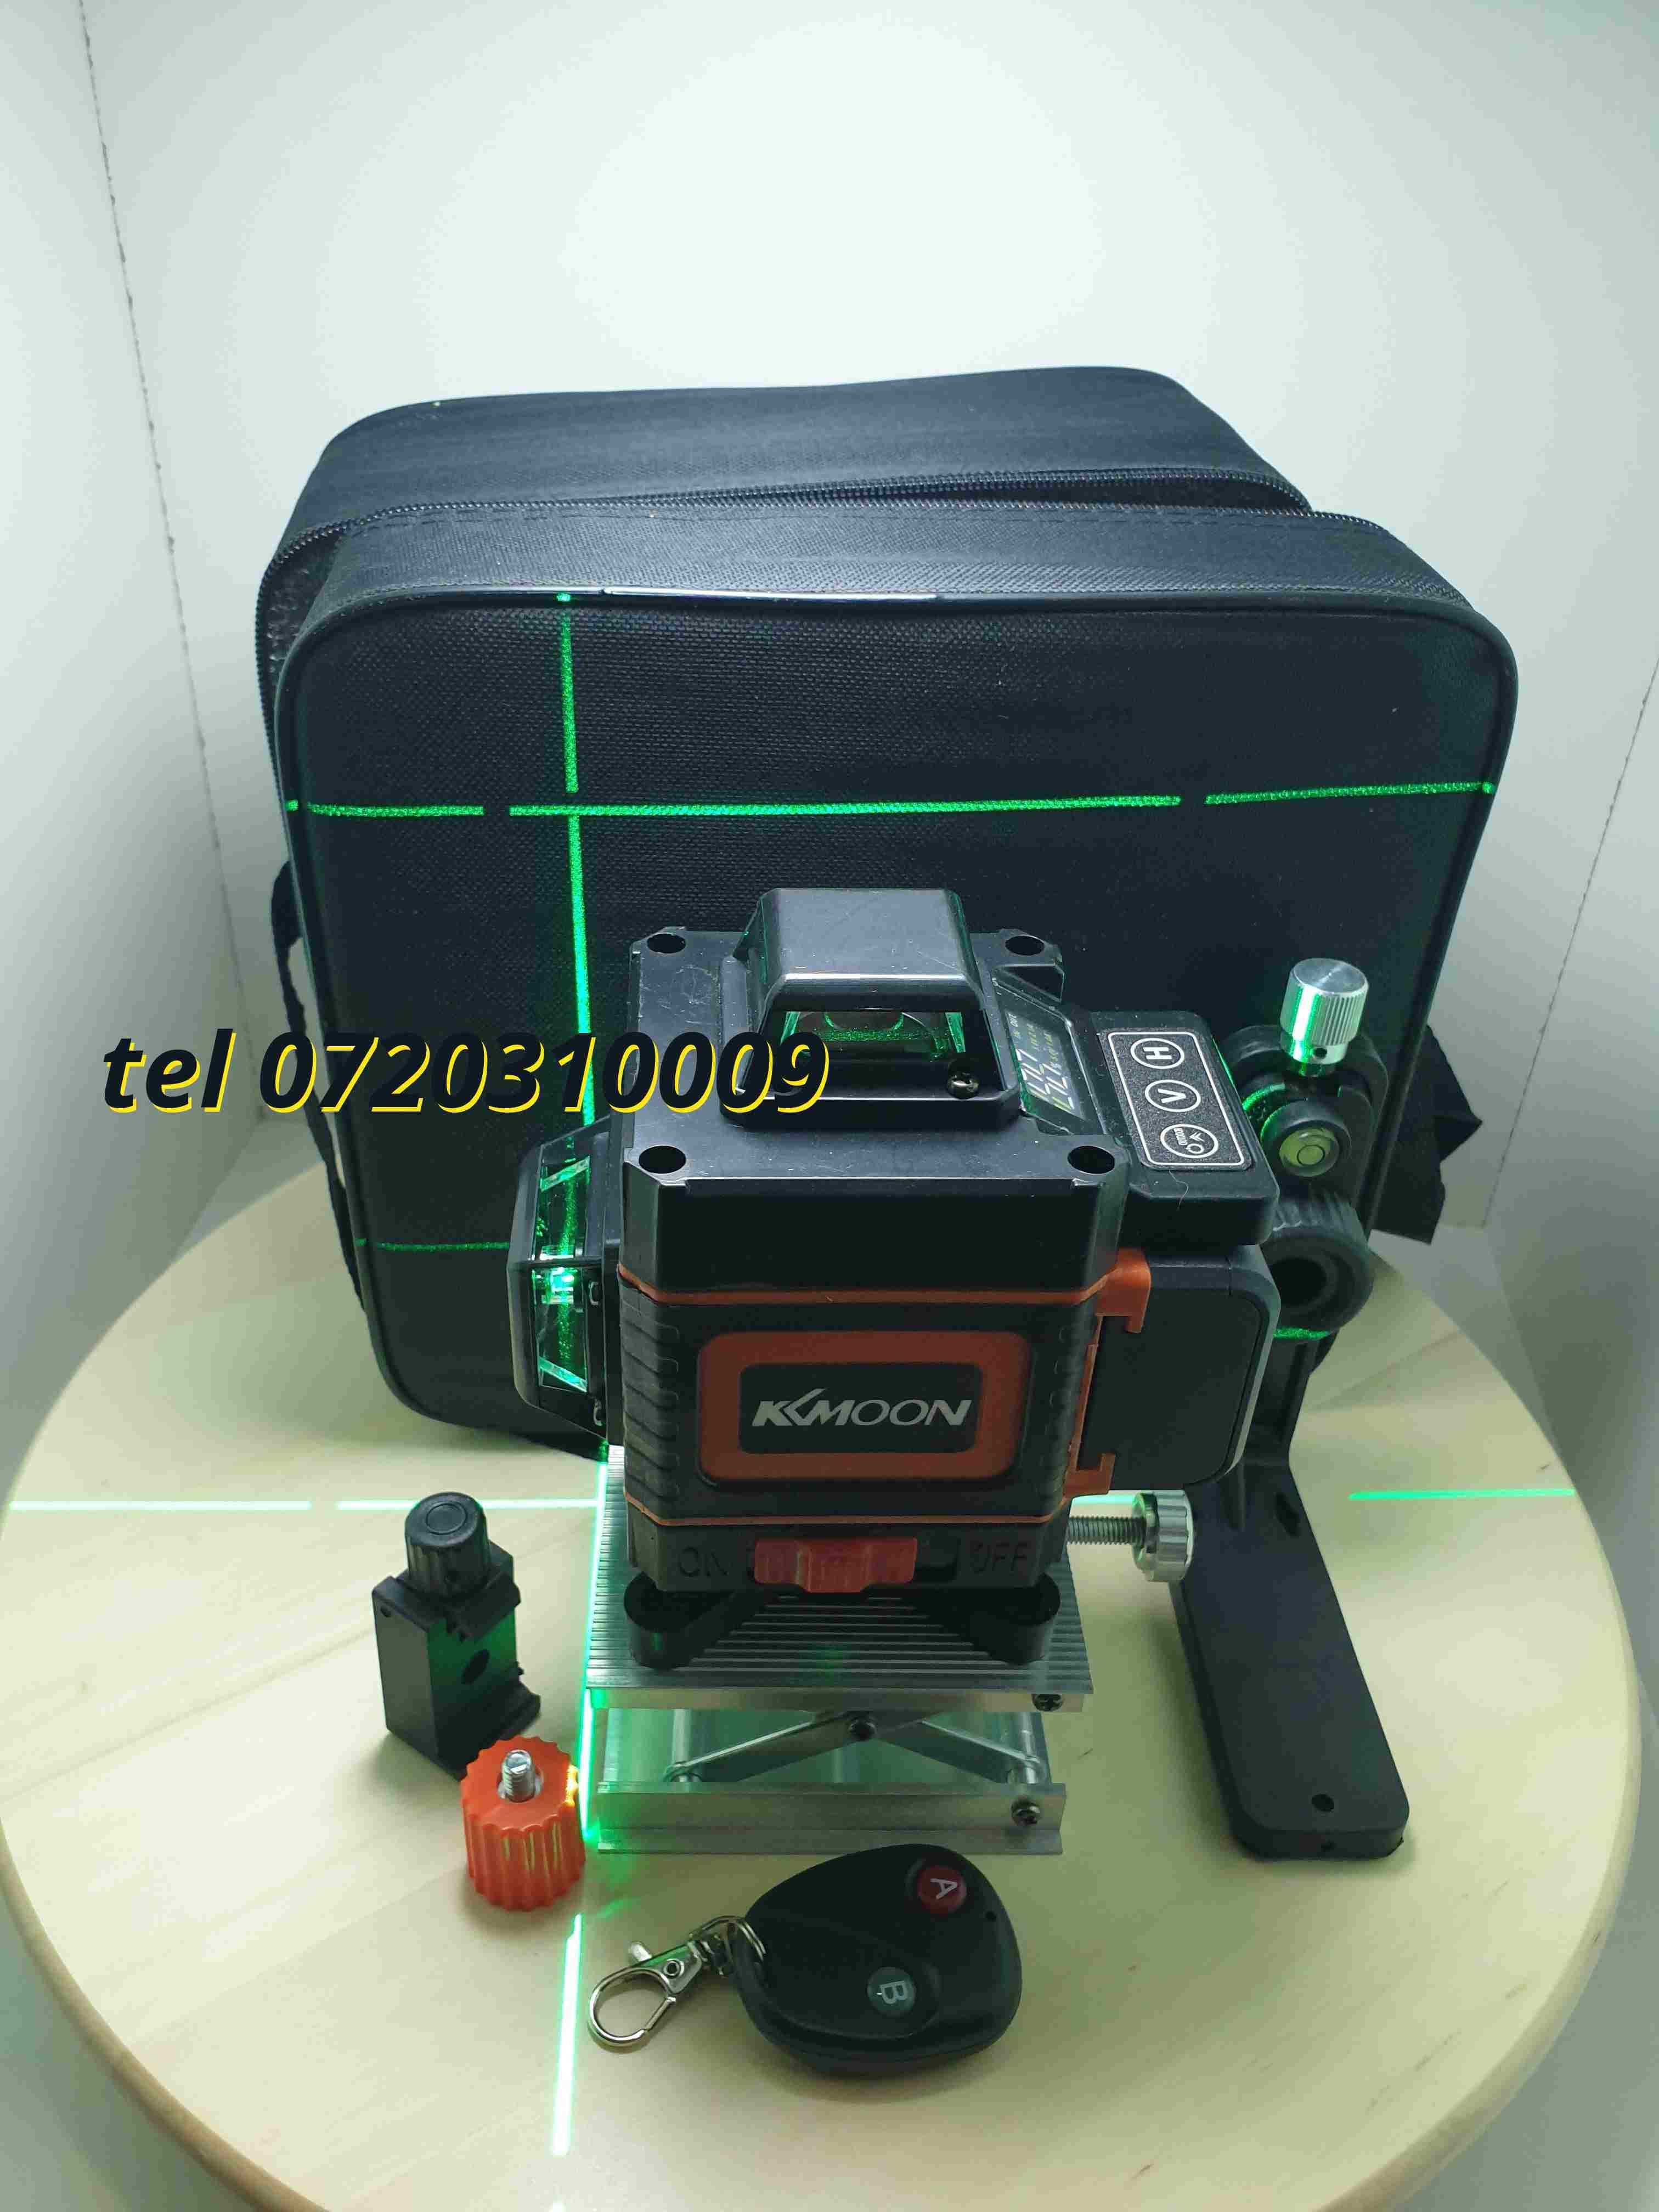 Oferta Nivela Fascicul Ldvian Profesionala 16 Lini 4d Linii Laser Ver